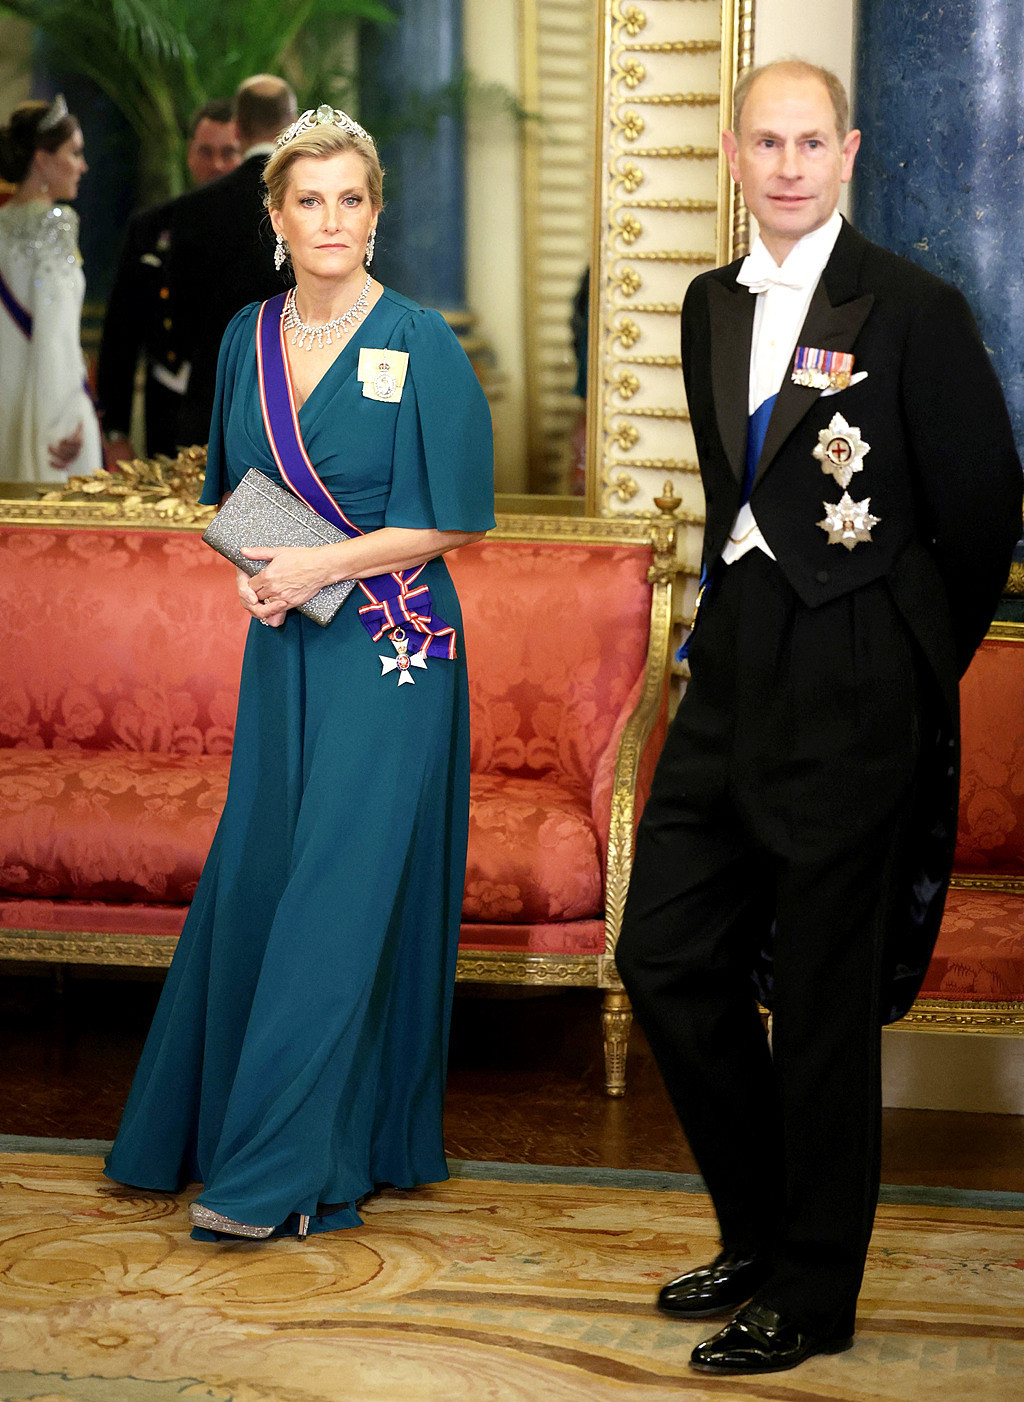 英媒報導多年來王室預期女王三子愛德華王子（Prince Edward，上圖右）將繼承父親的「愛丁堡公爵」（Duke of Edinburgh）頭銜。圖左為愛德華王子妻子蘇菲。（資料照／TPG、達志影像）